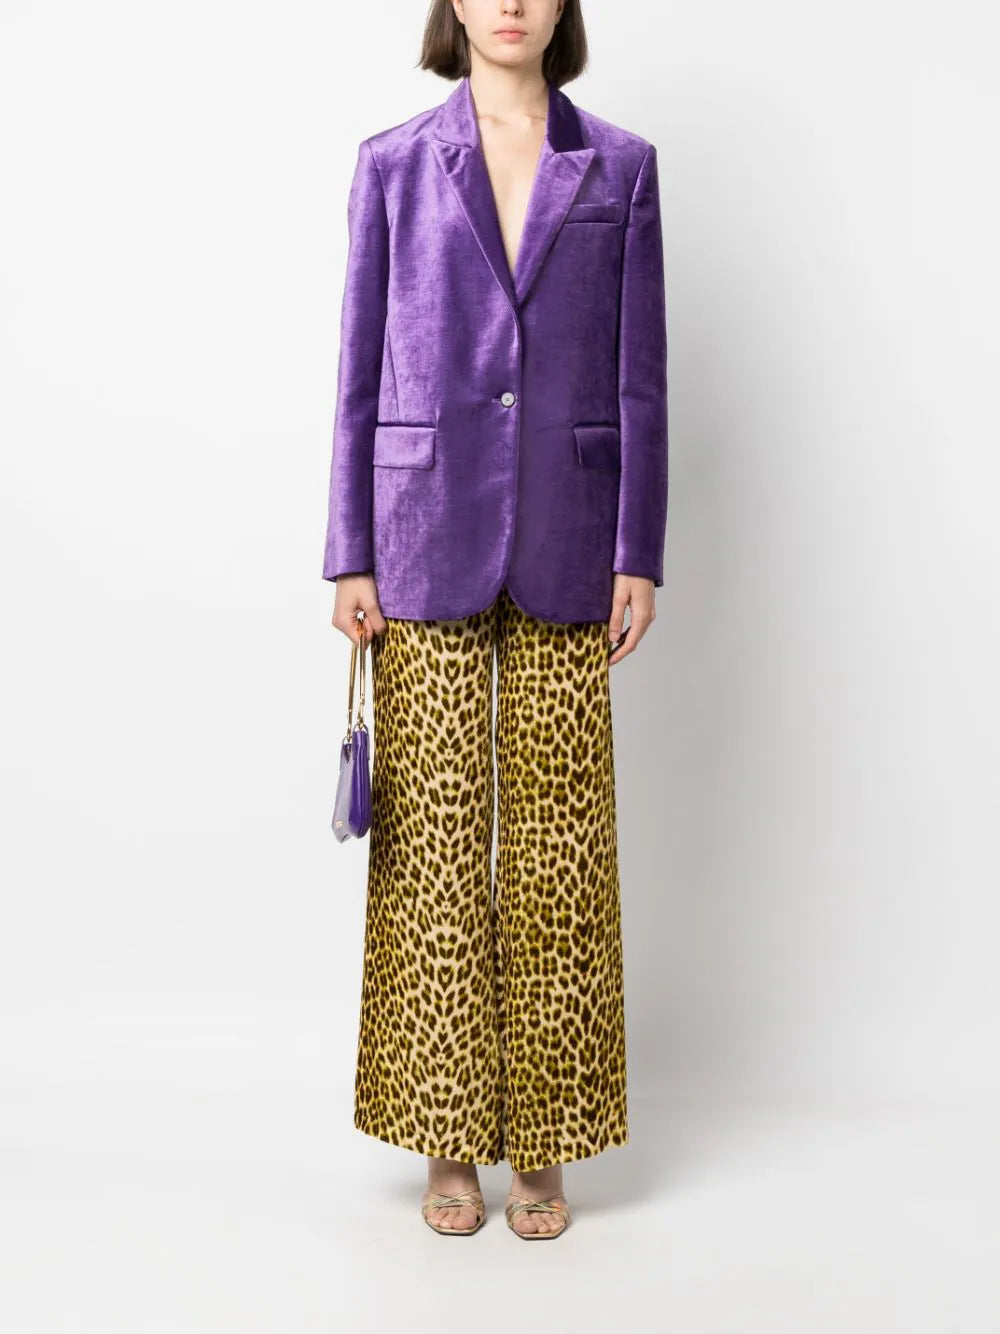 Cotton viscose velvet jacket, violet